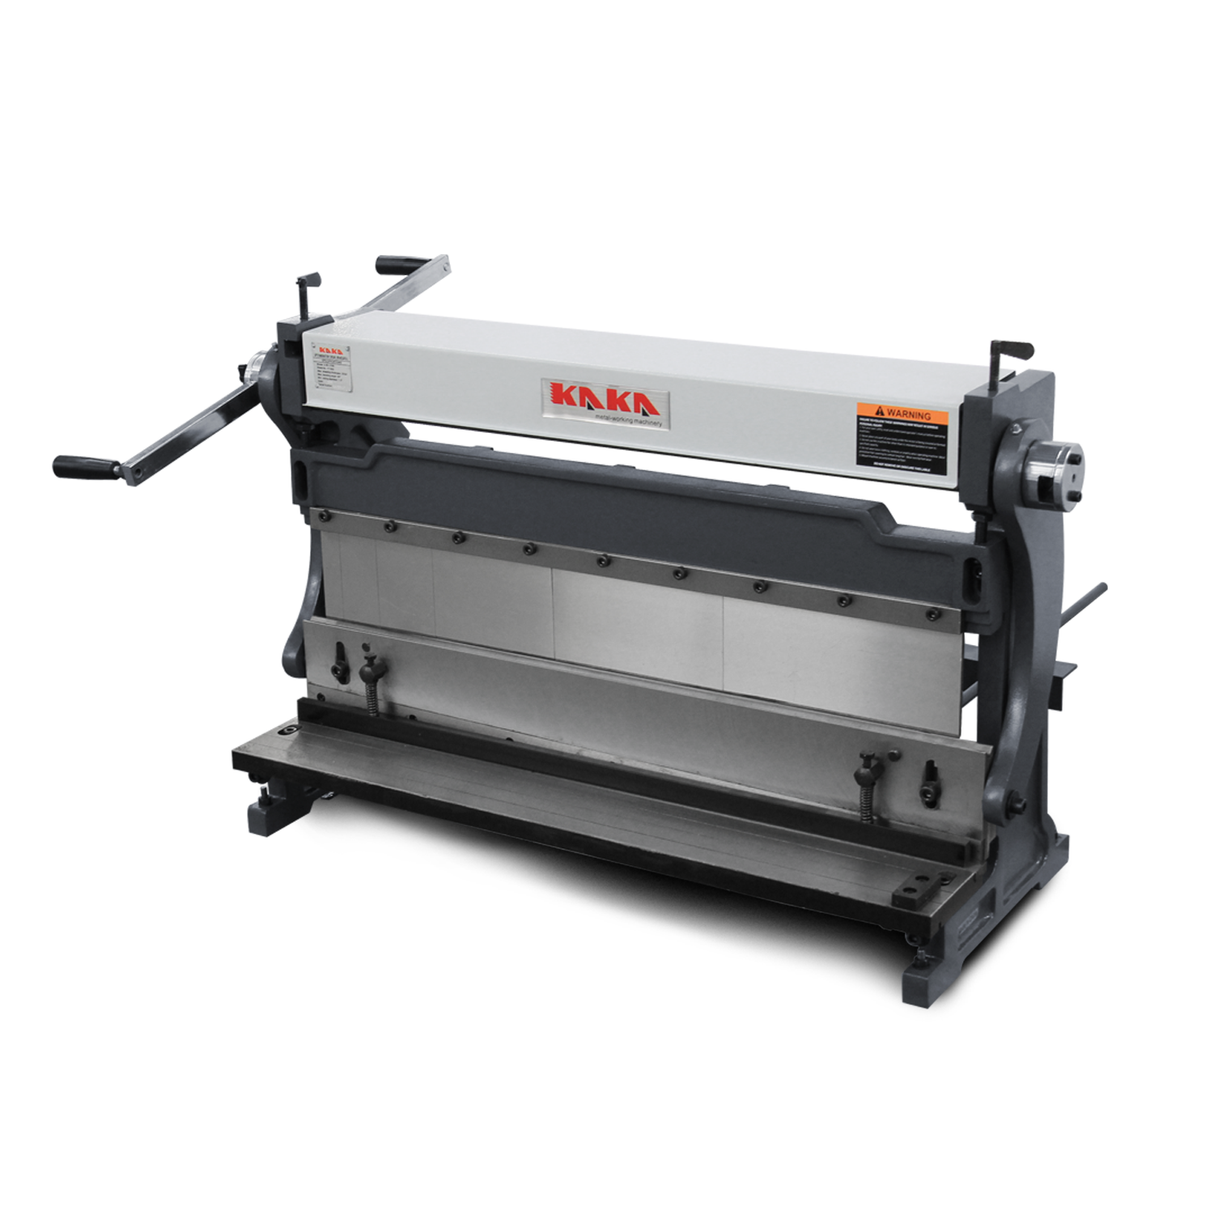 KANG Industrial 3-IN-1/30 760mm Sheet Metal Guillotine Brake and Slip Roll Machine, Combination Sheet Metal Brake